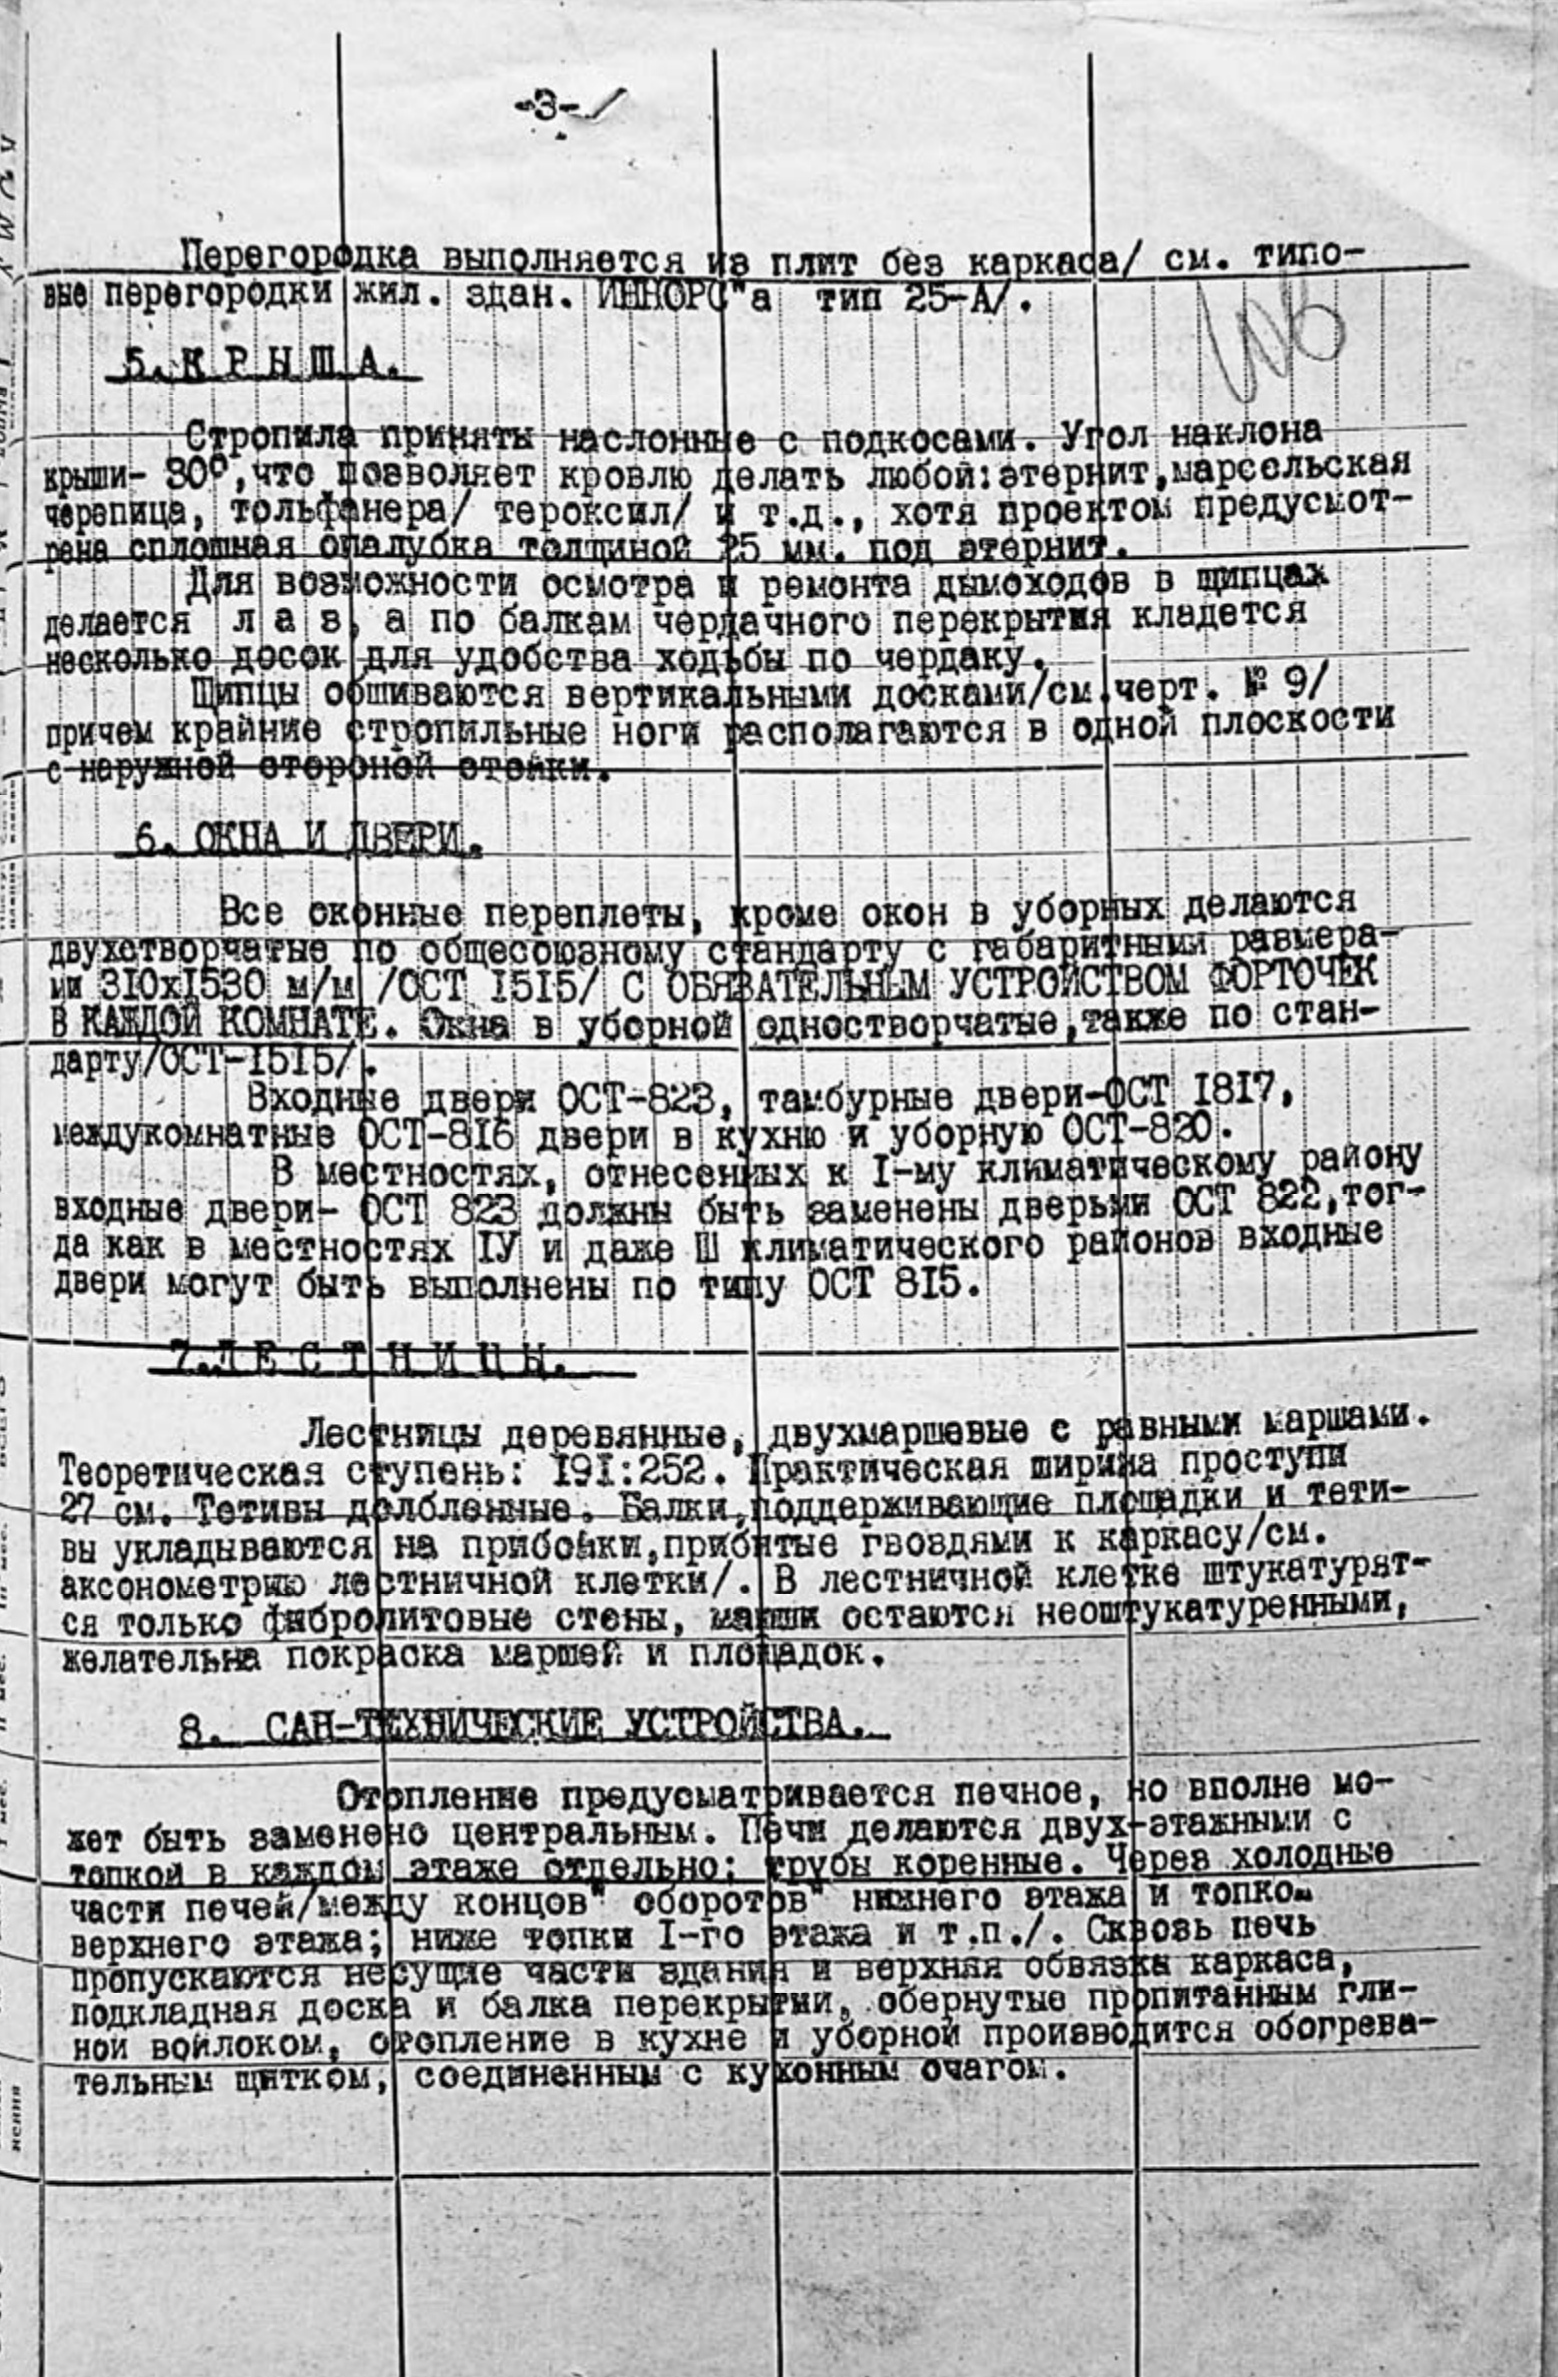 Производственные сметы на постройку различных объектов на Гольянском тракте (СОЦГОРОДе) 1932—1933